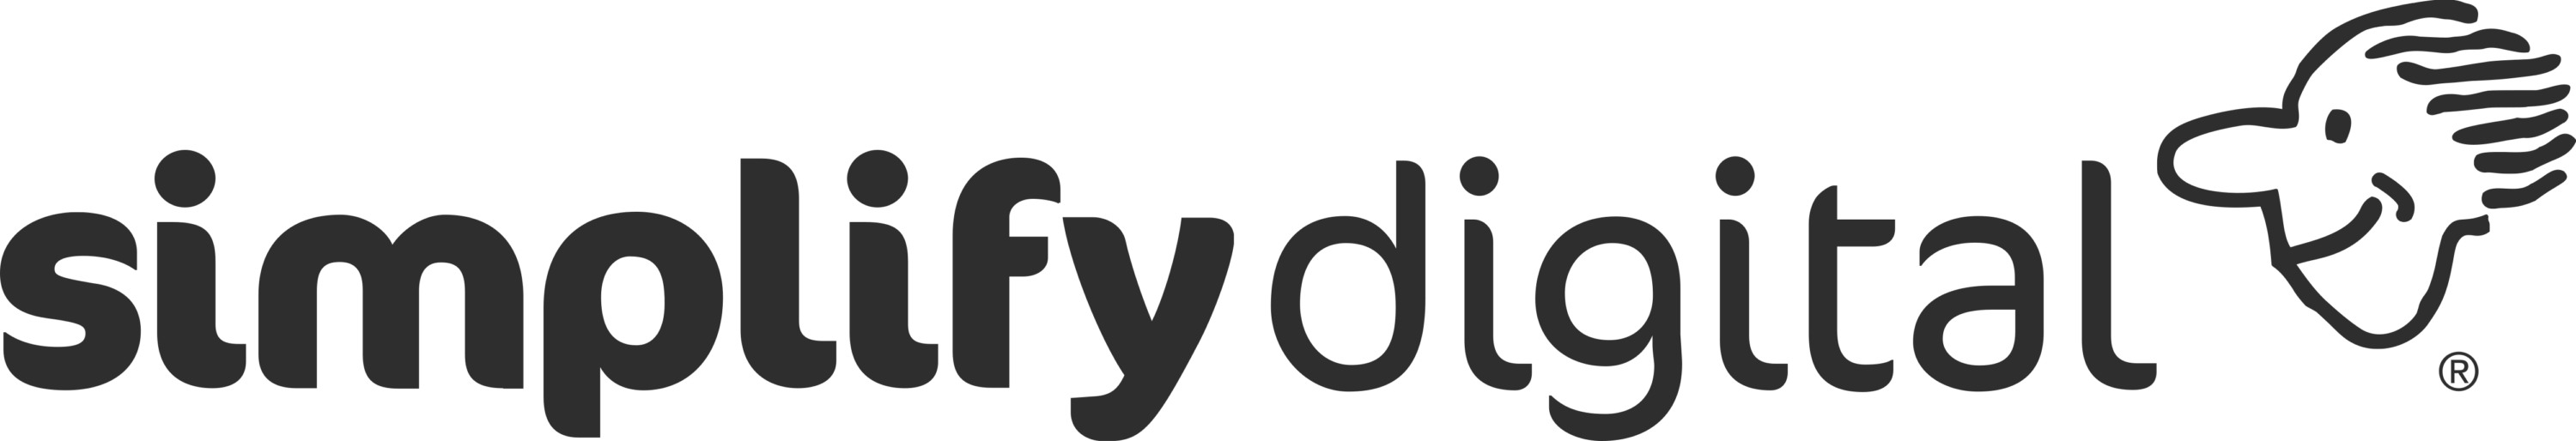 Simplifydigital Logo